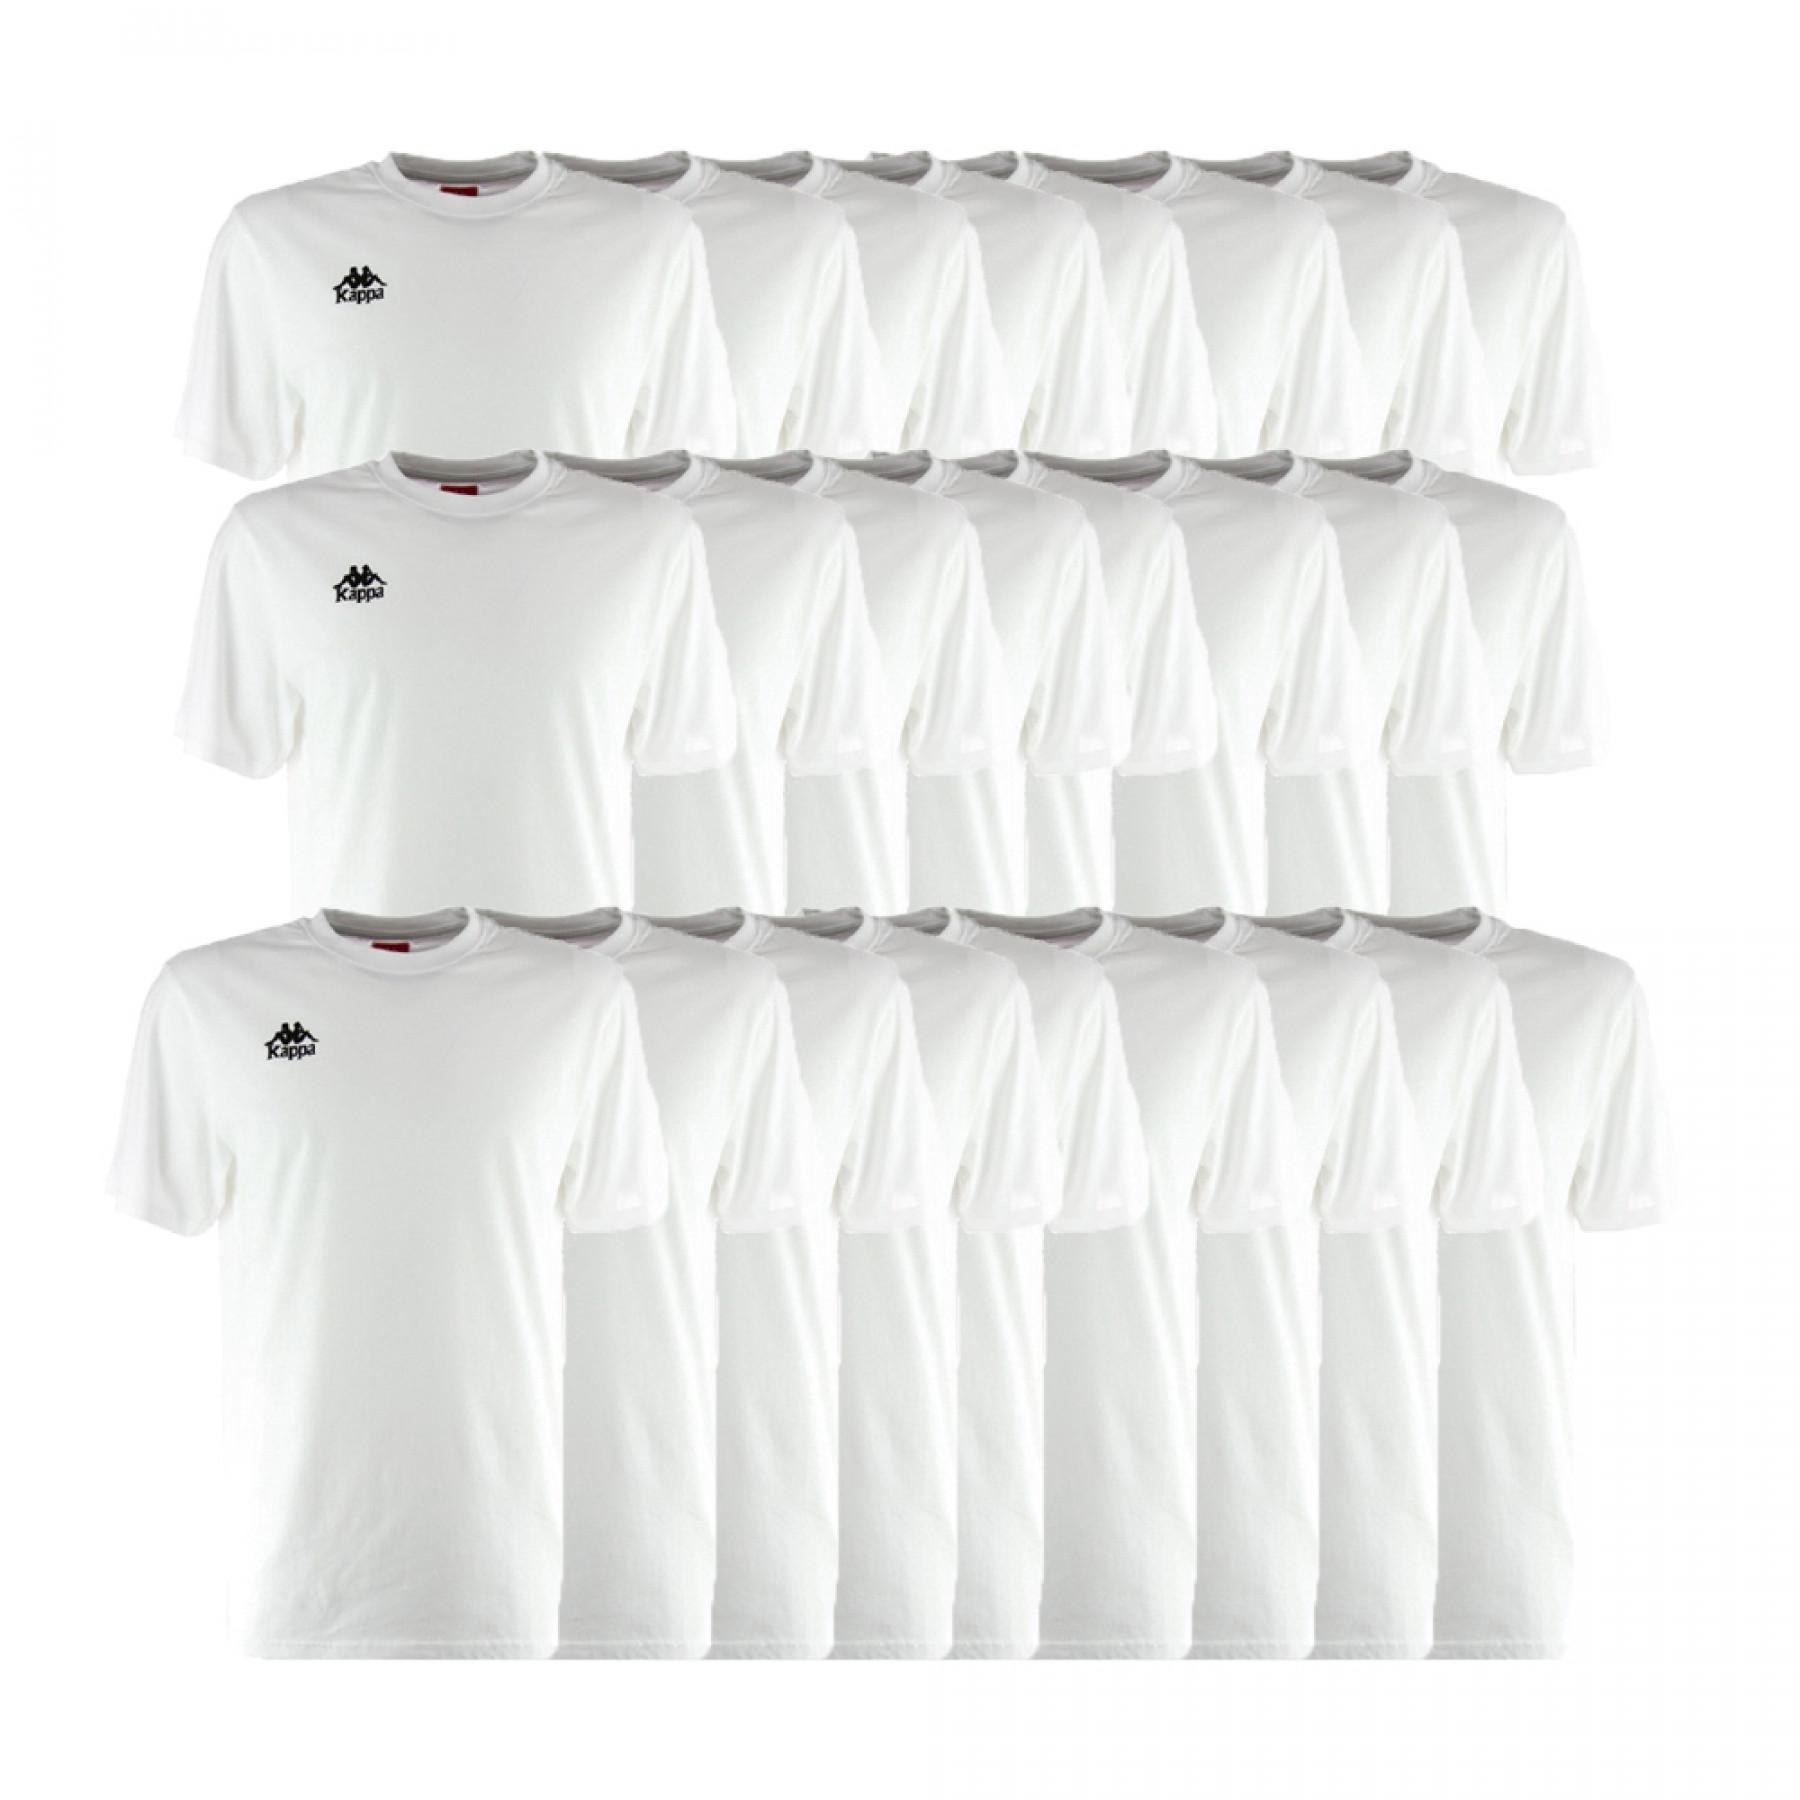 Paquete de 25 camisetas Kappa Picelo